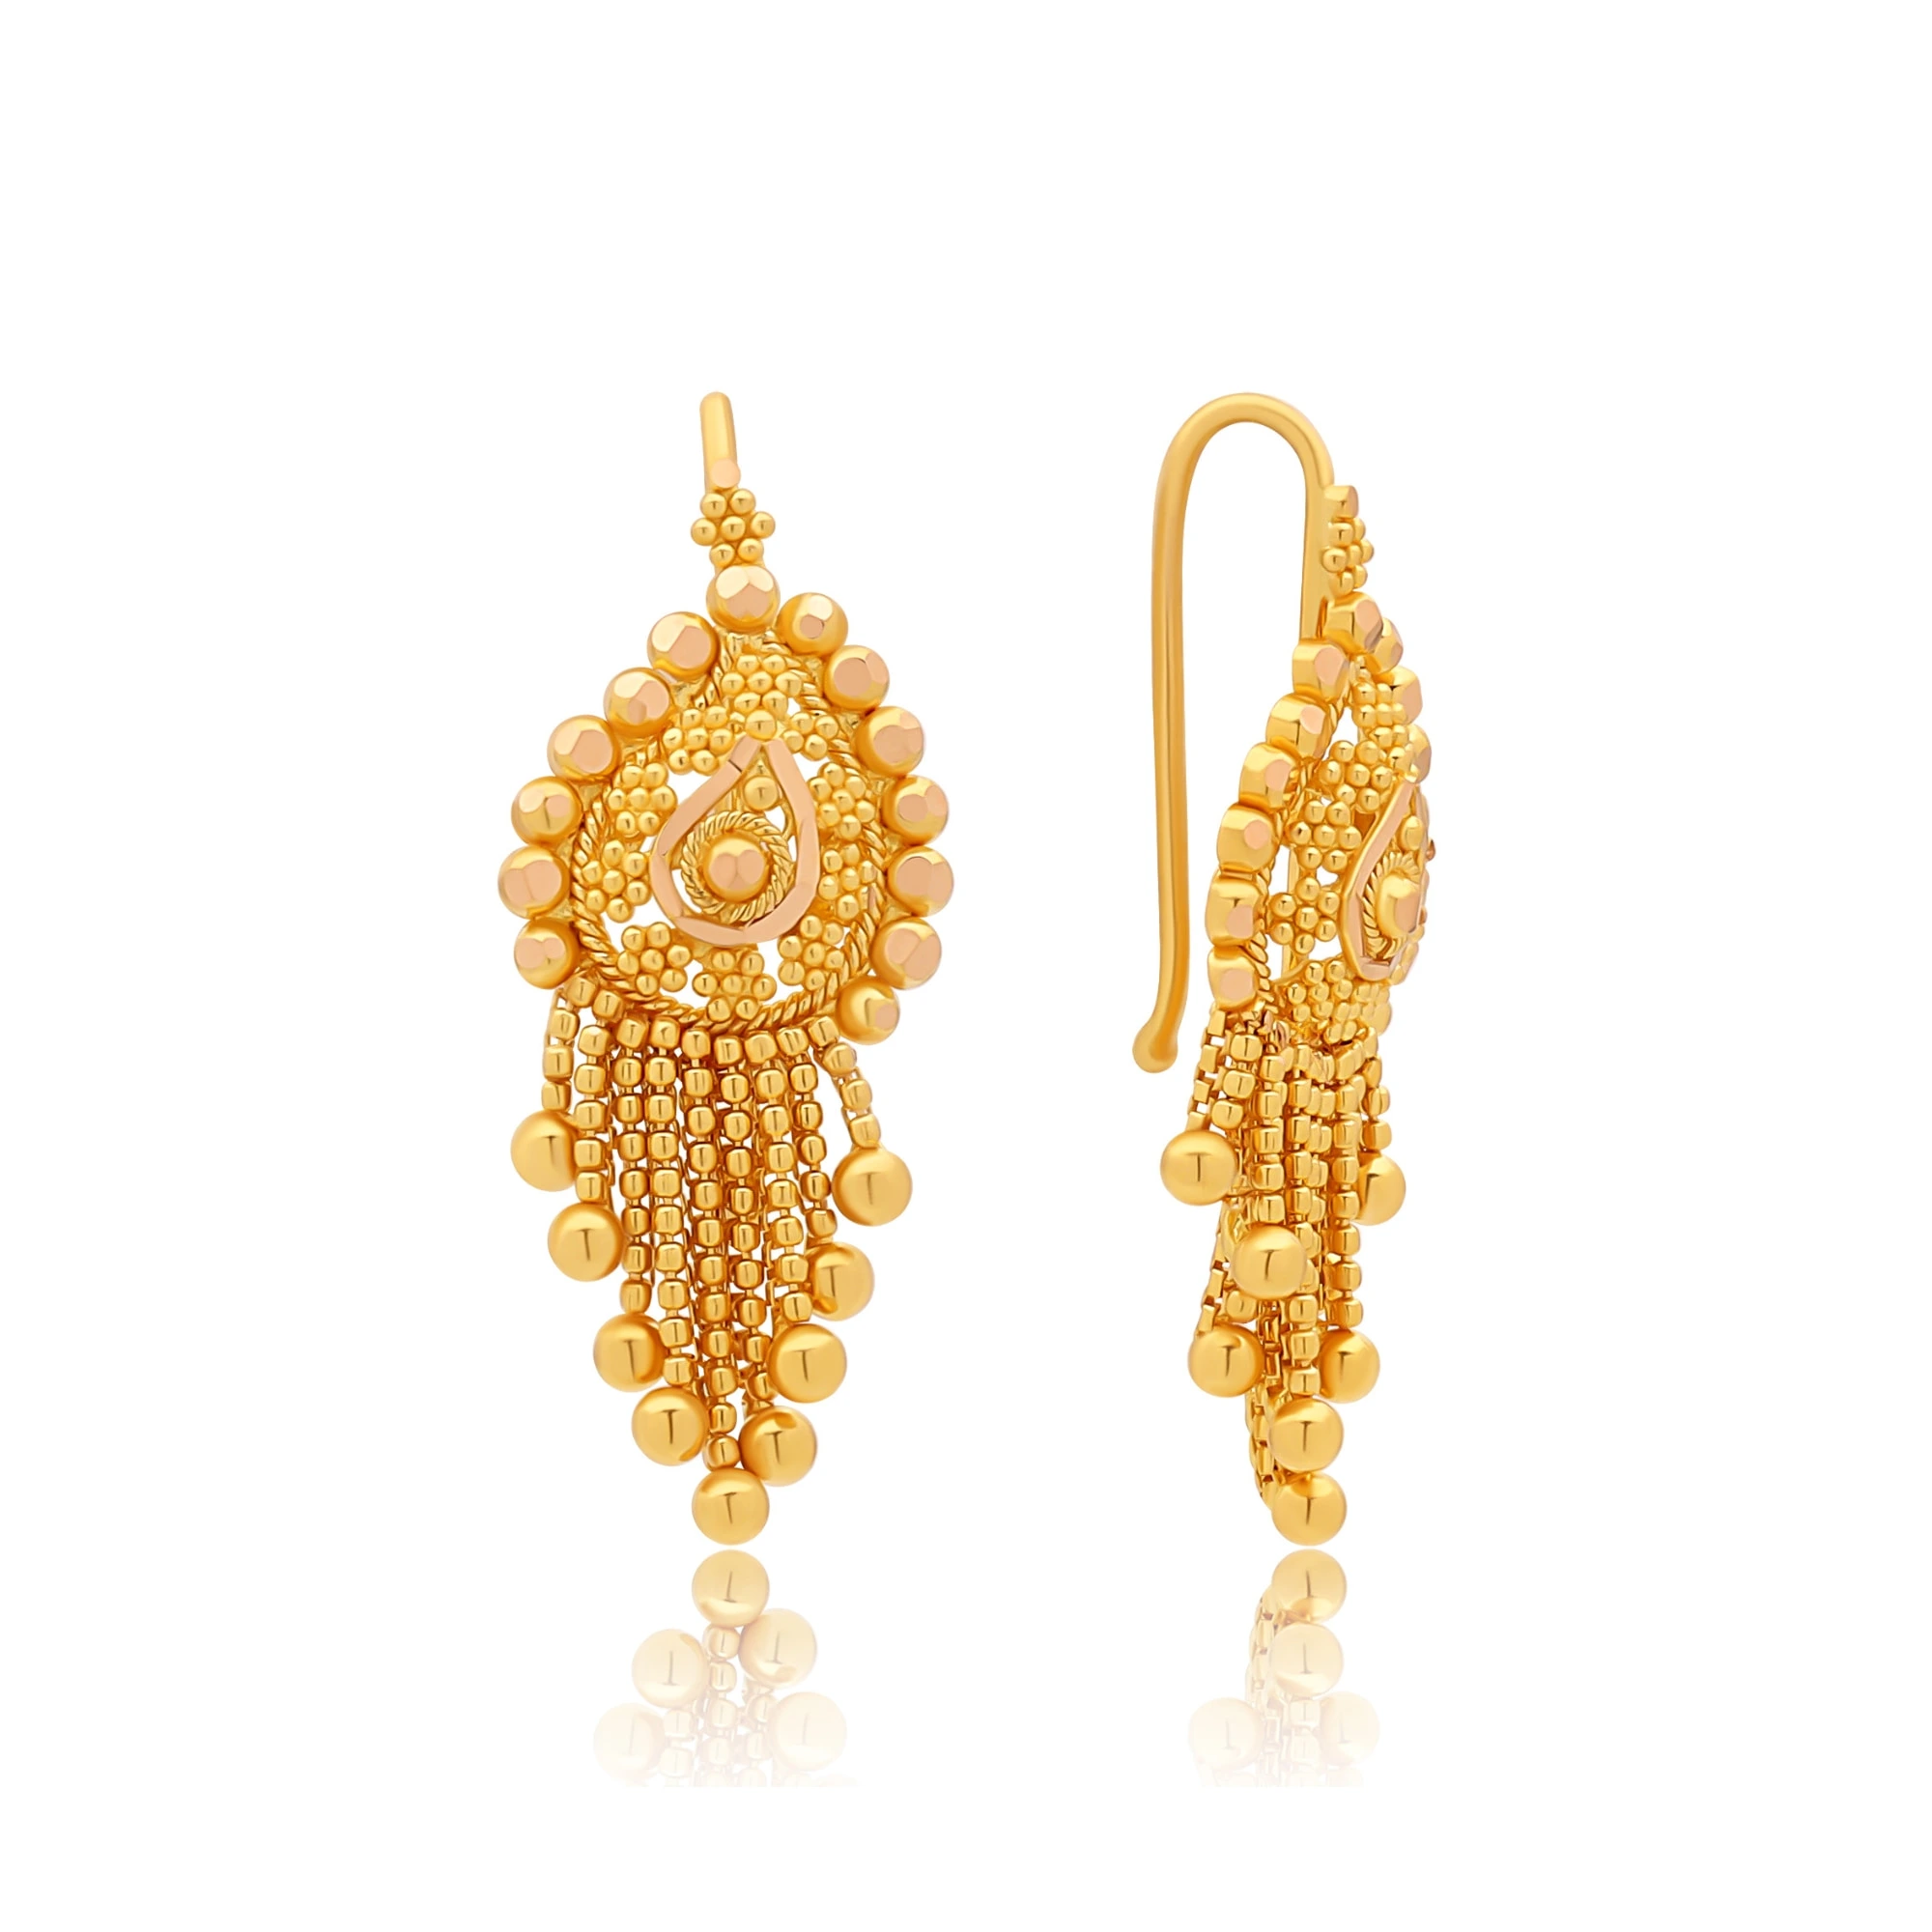 New Gold Earrings Design | न्यू गोल्ड इयररिंग डिजाइन -